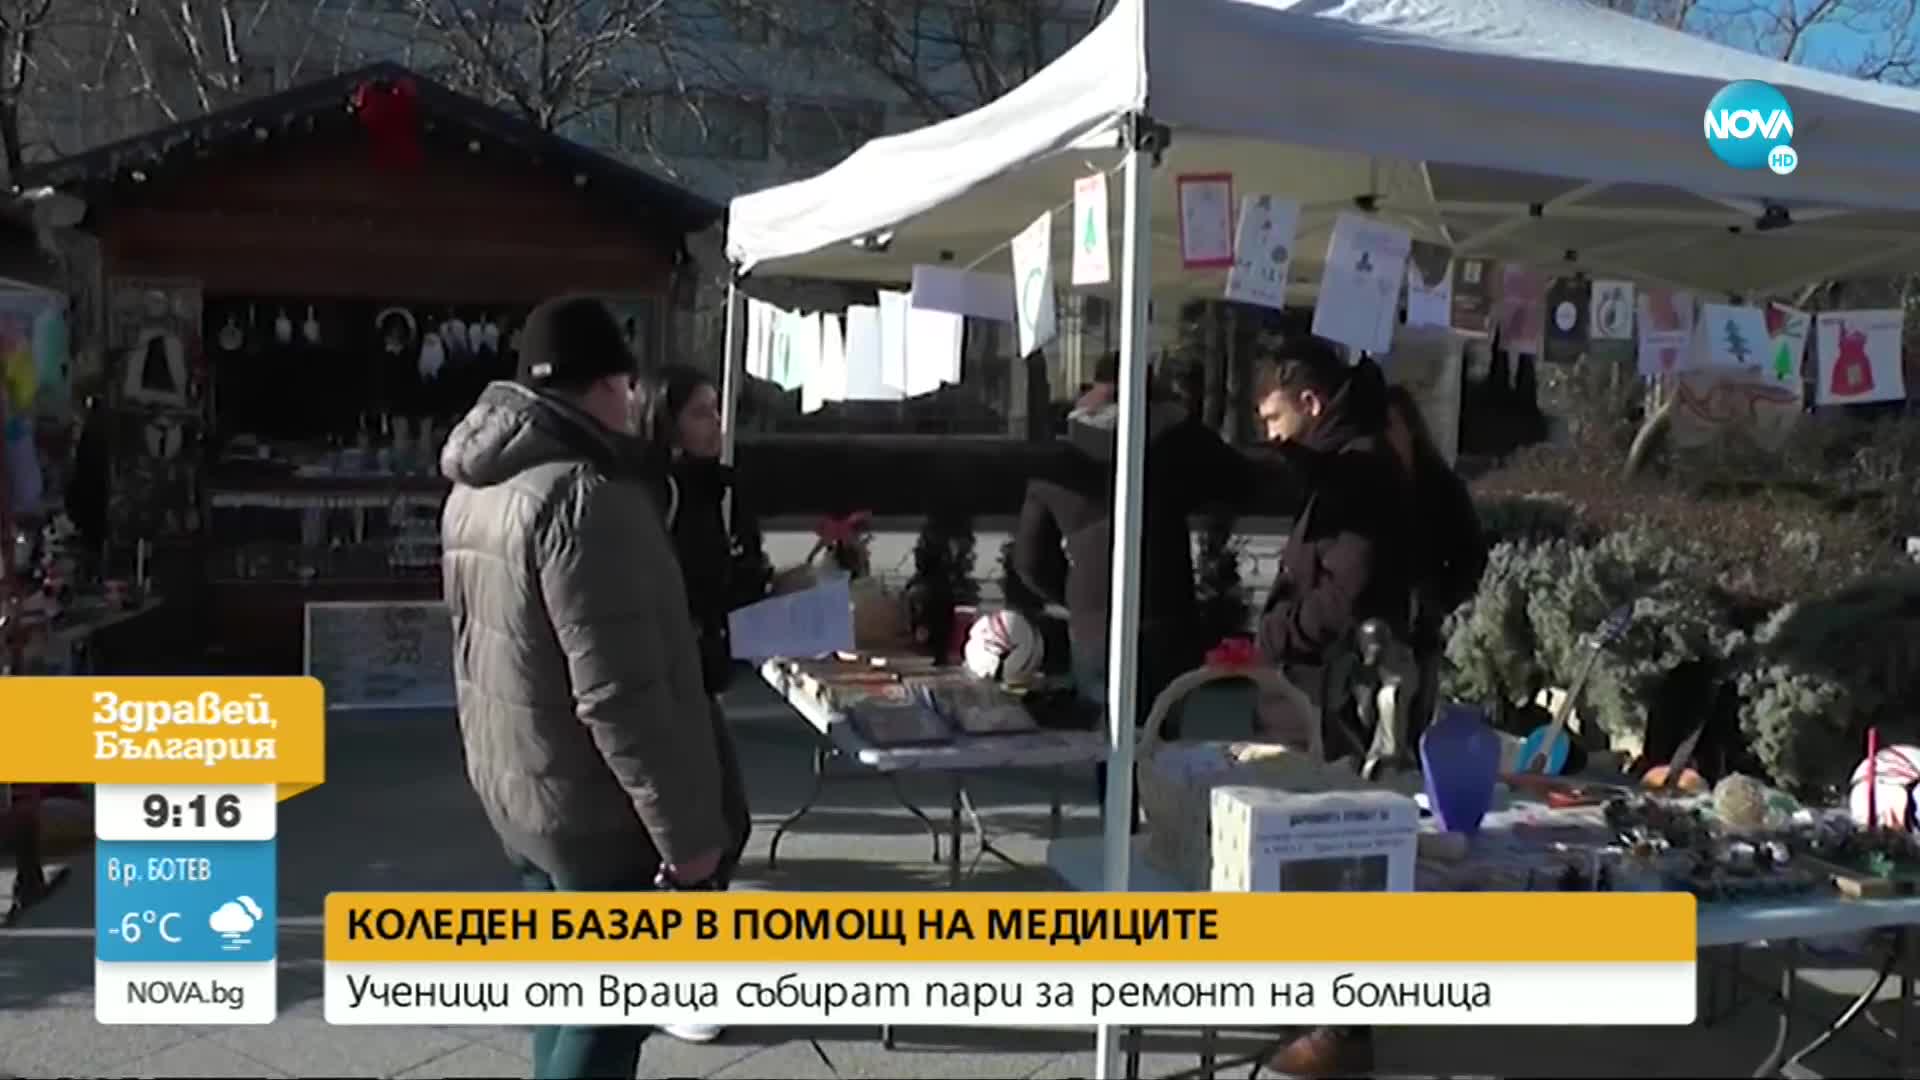 Коледен базар в помощ на медиците във Враца